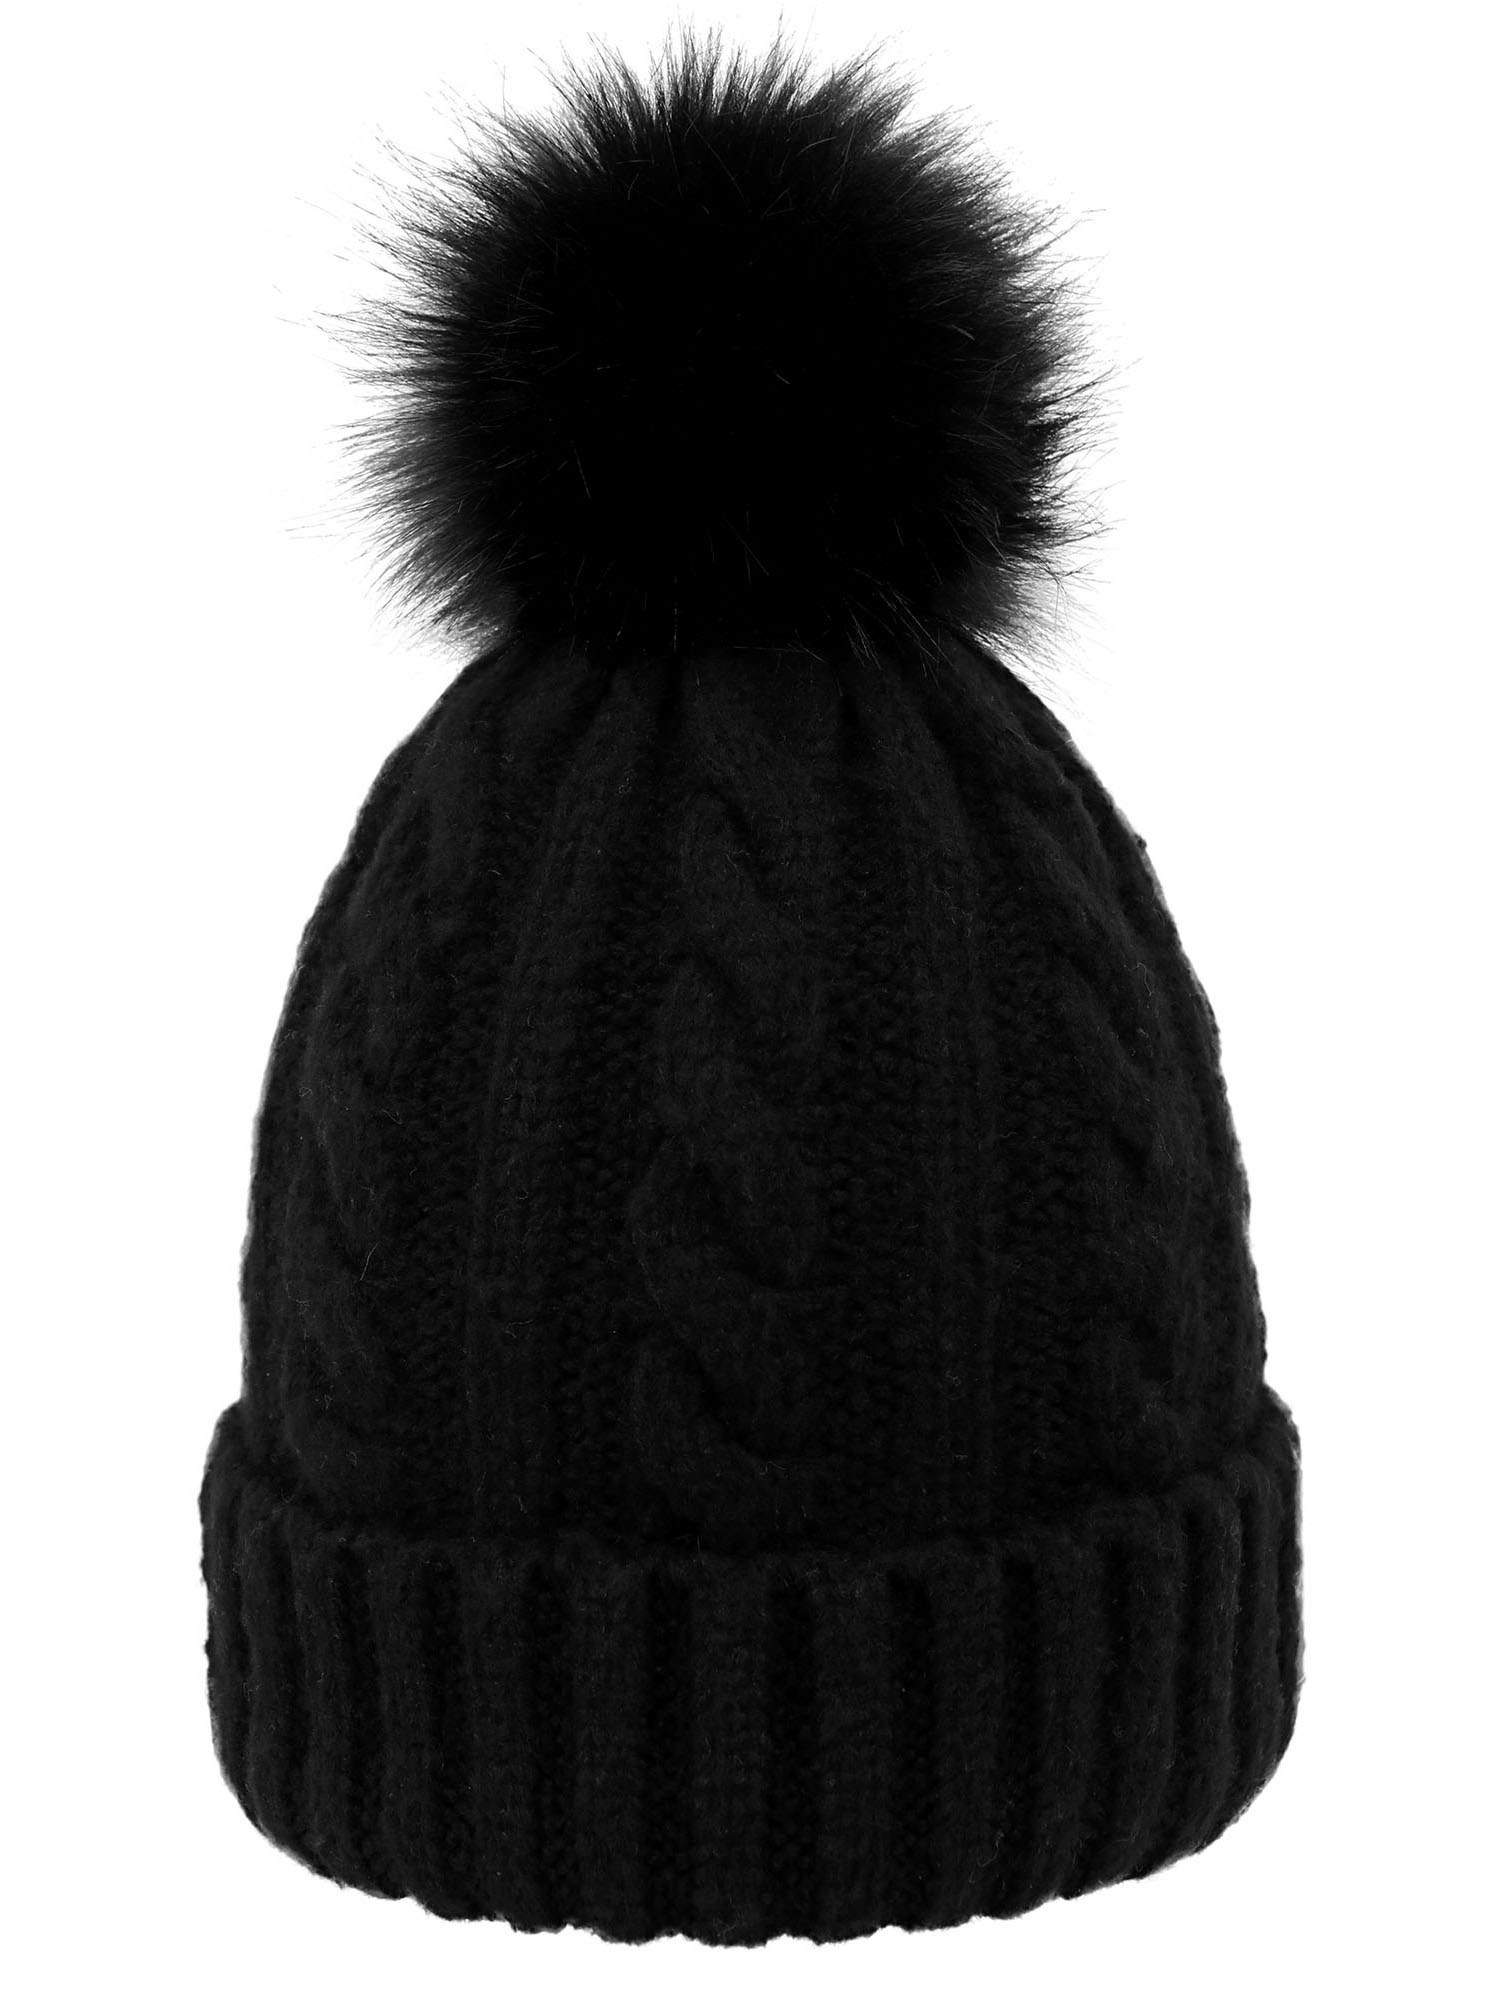 Winter Hat Beanie for Women Knit Slouchy Ski Hat Faux Fur Beanies Pompom, Black Beanie, Black pom Beanie - image 1 of 4